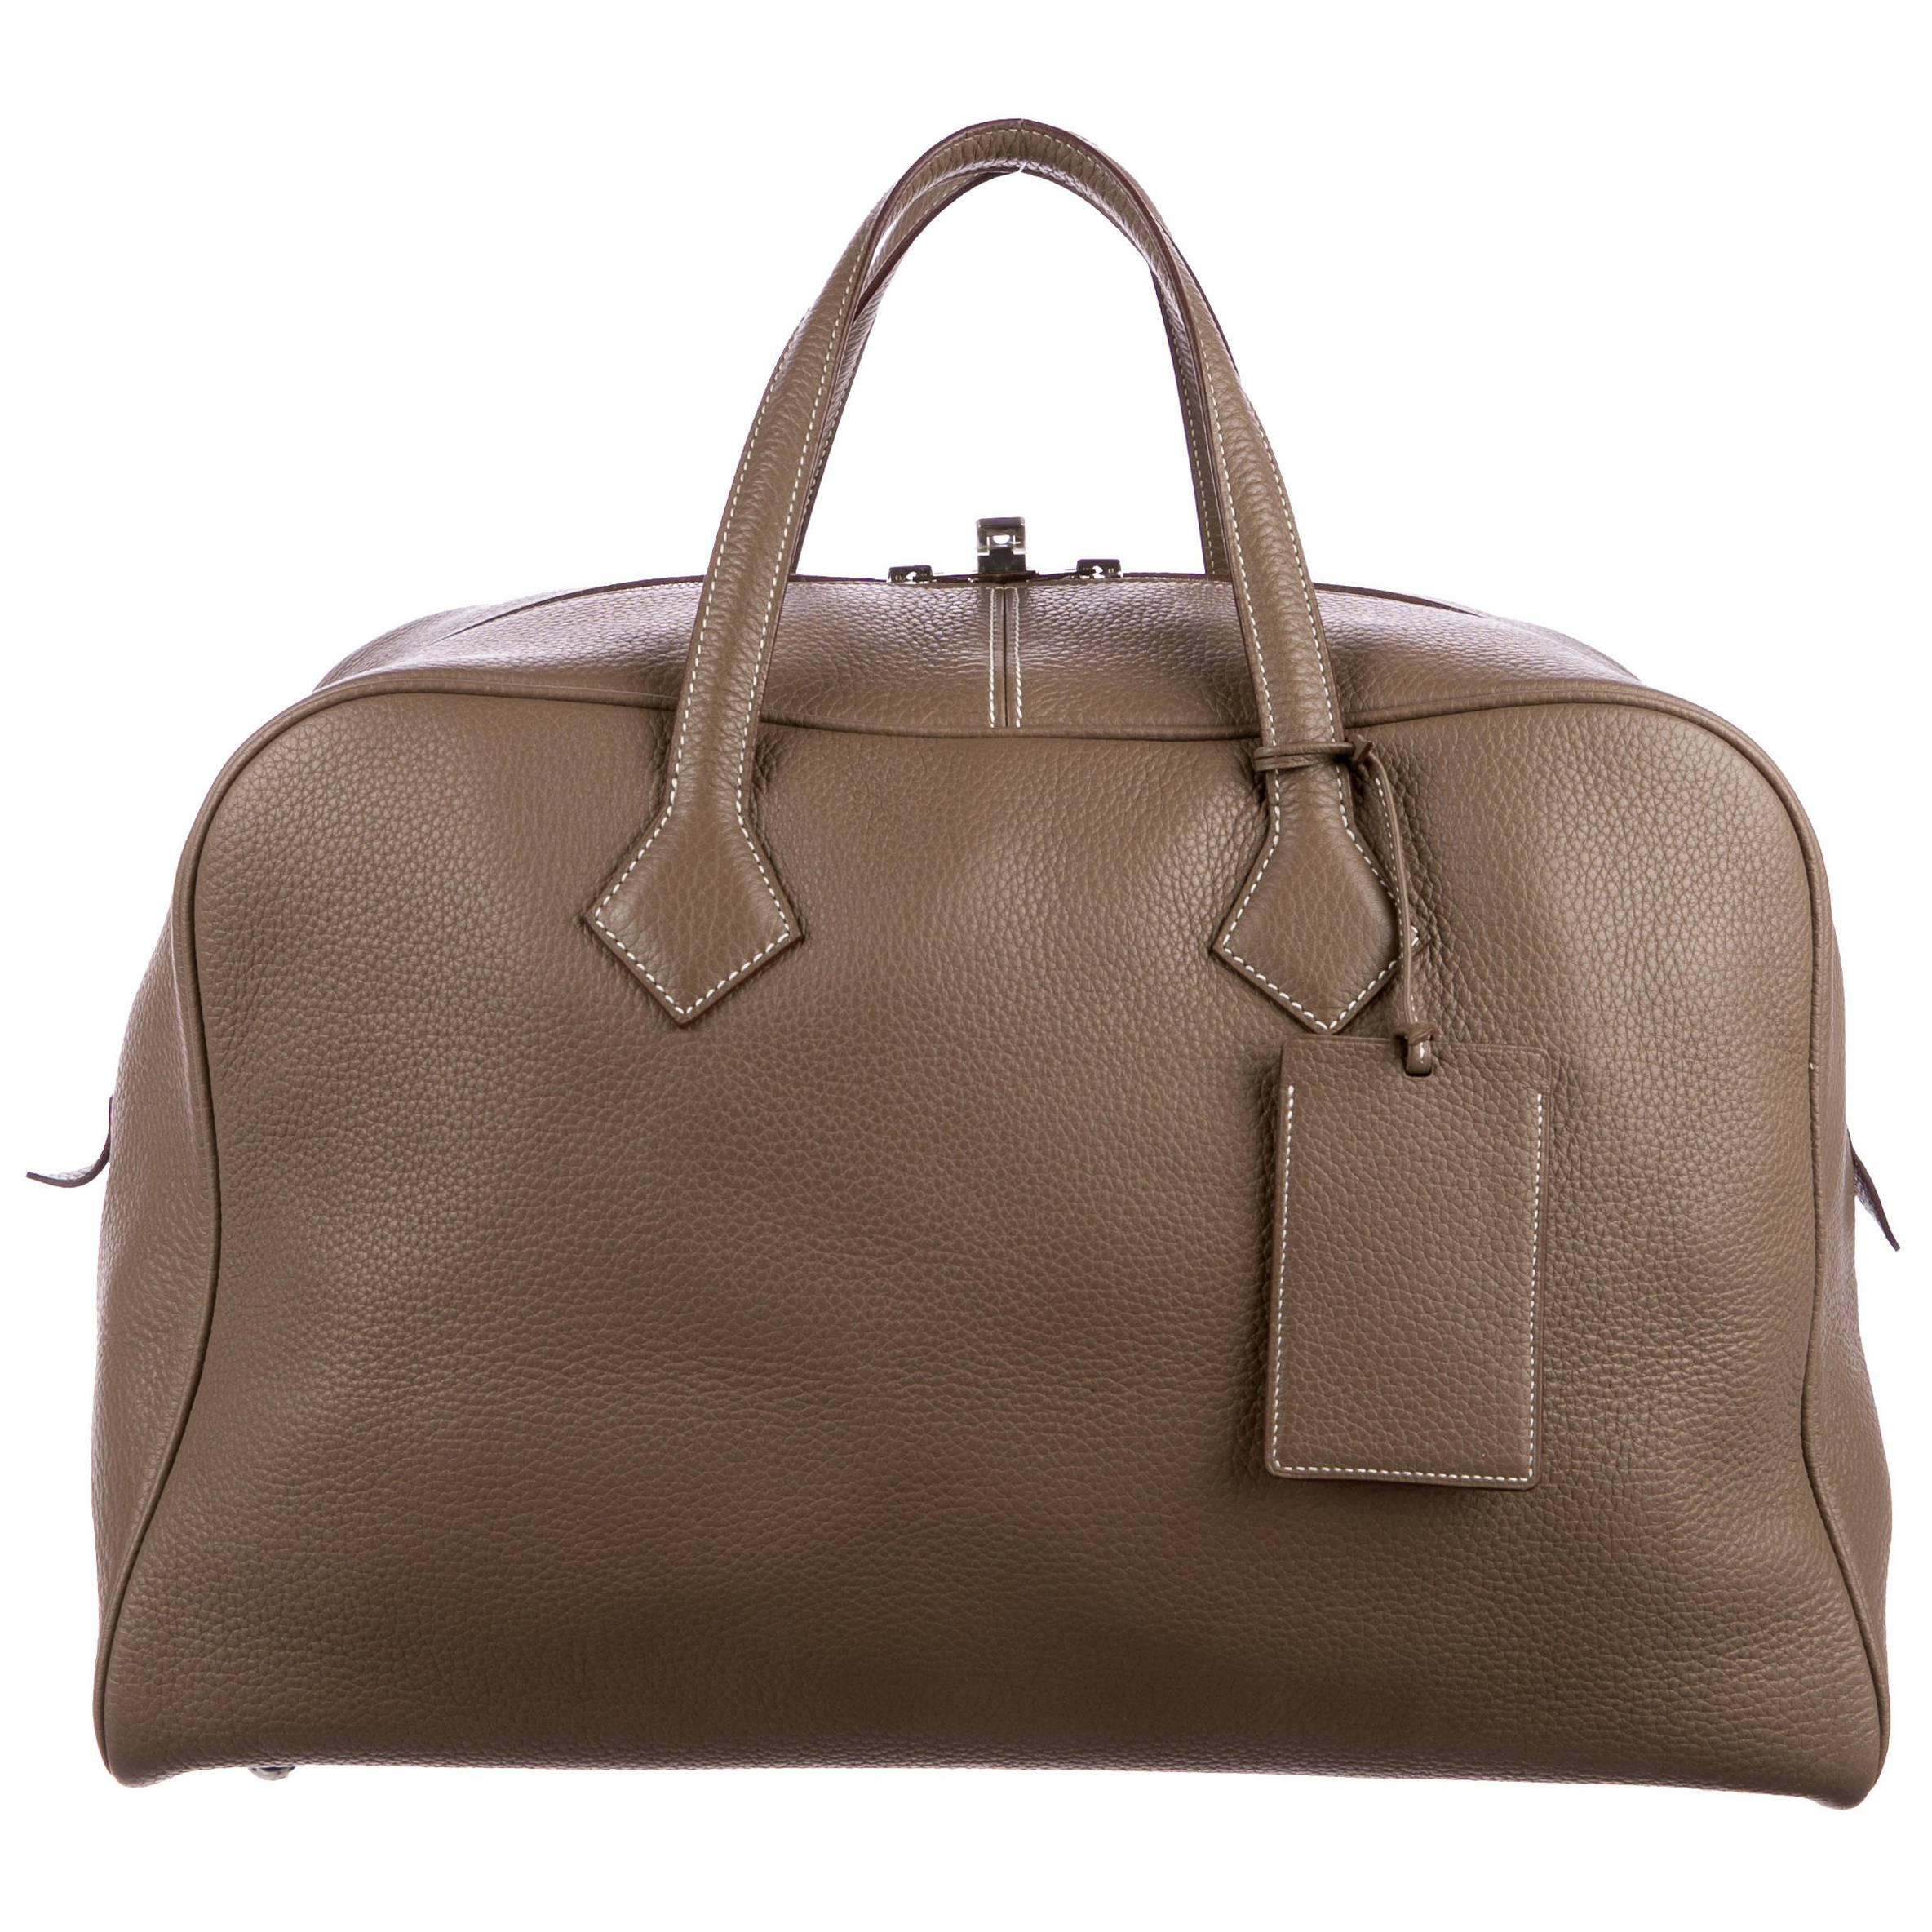 Hermes New Leather Men's Carryall Travel Weekender Duffle Tote Handle Tote Bag